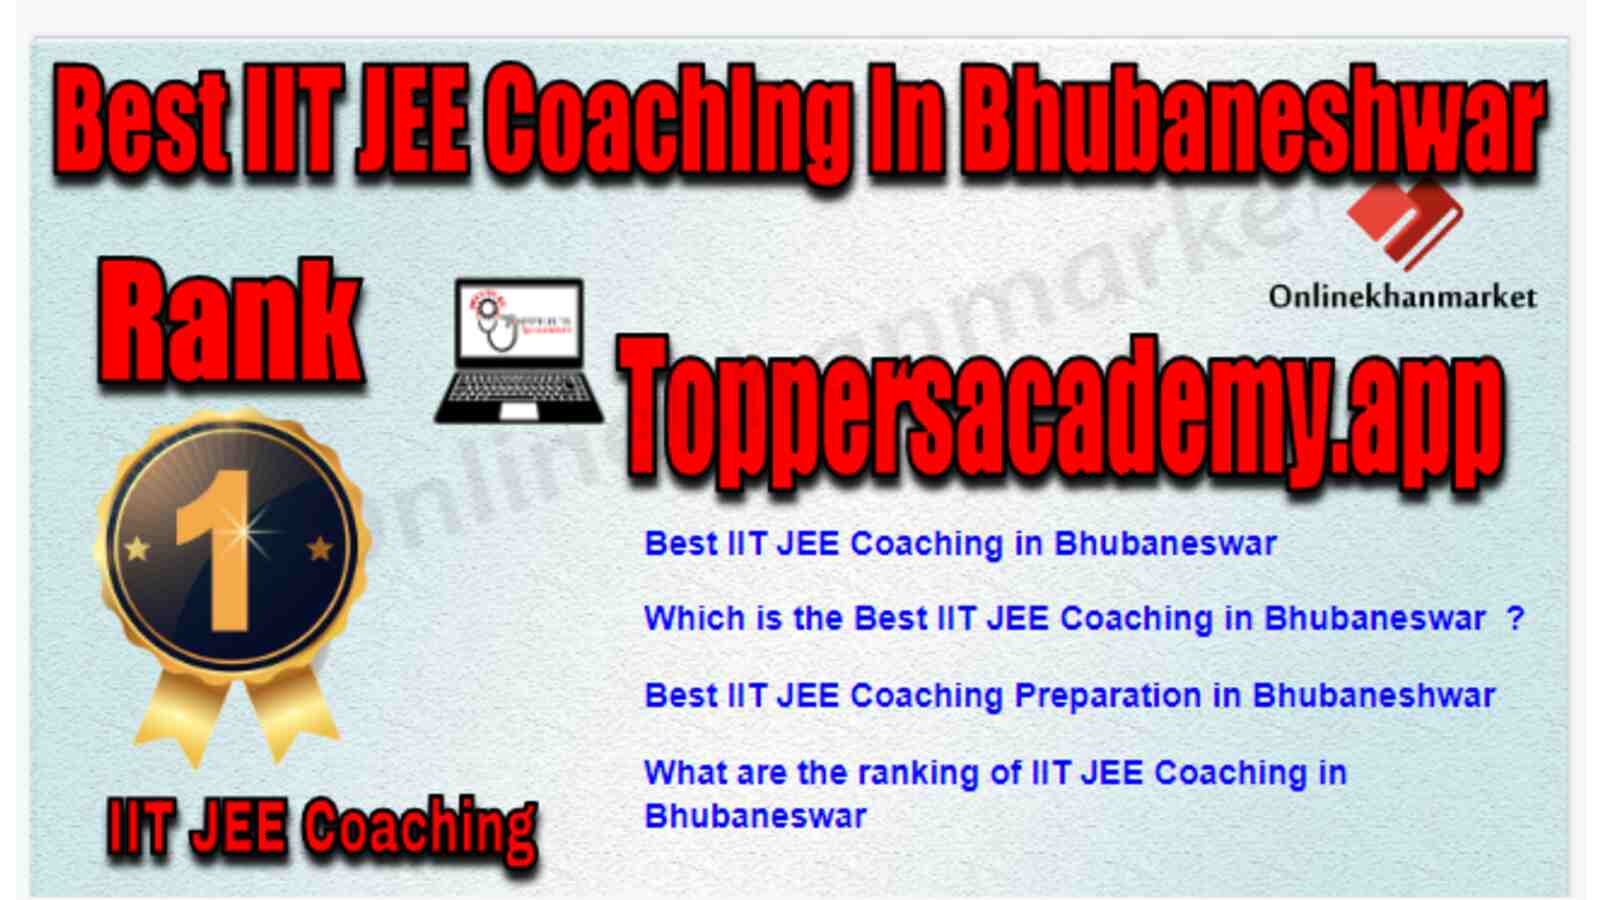 Rank 1 Best IIT JEE Coaching in Bhubaneshwar